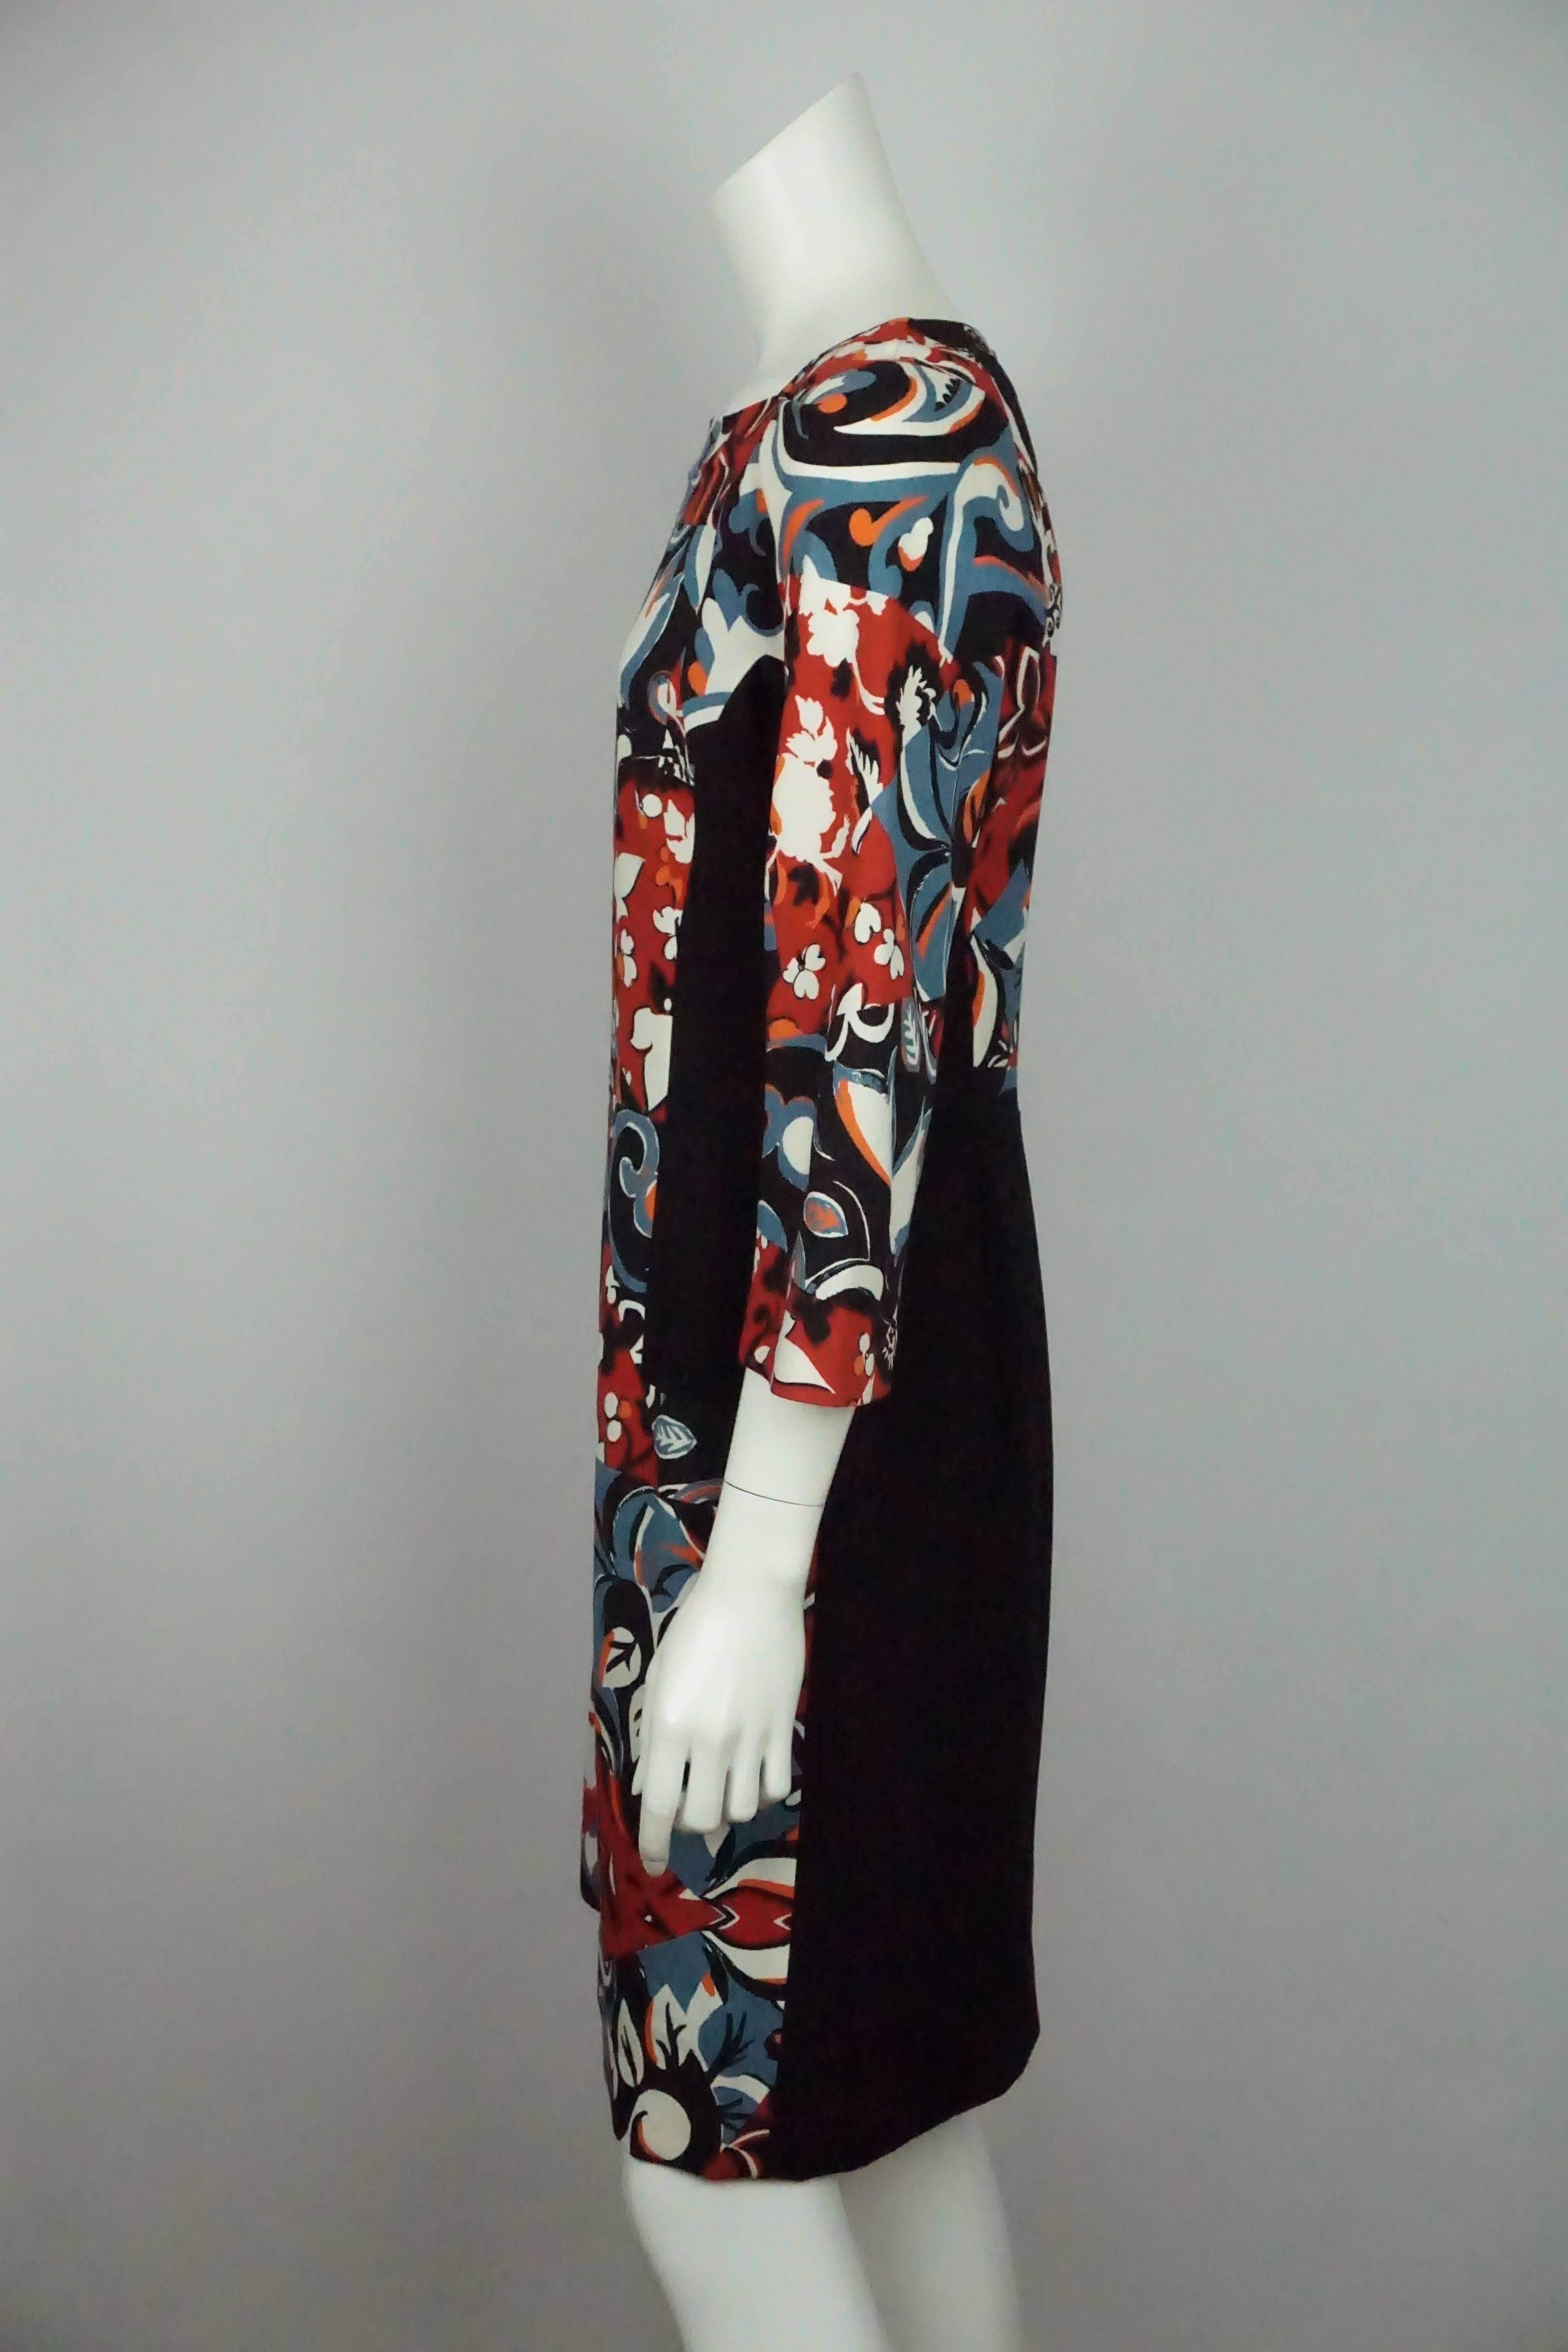 Etro Schwarz und Multi Floral Seide Print 3/4 Ärmel Kleid - 46  Dieses geblümte Kleid ist in ausgezeichnetem Zustand. Es ist aus Wolle und Seide gefertigt. Das Kleid hat einen floralen und geometrischen Aufdruck in Weiß, Rot, Schwarz, Orange und